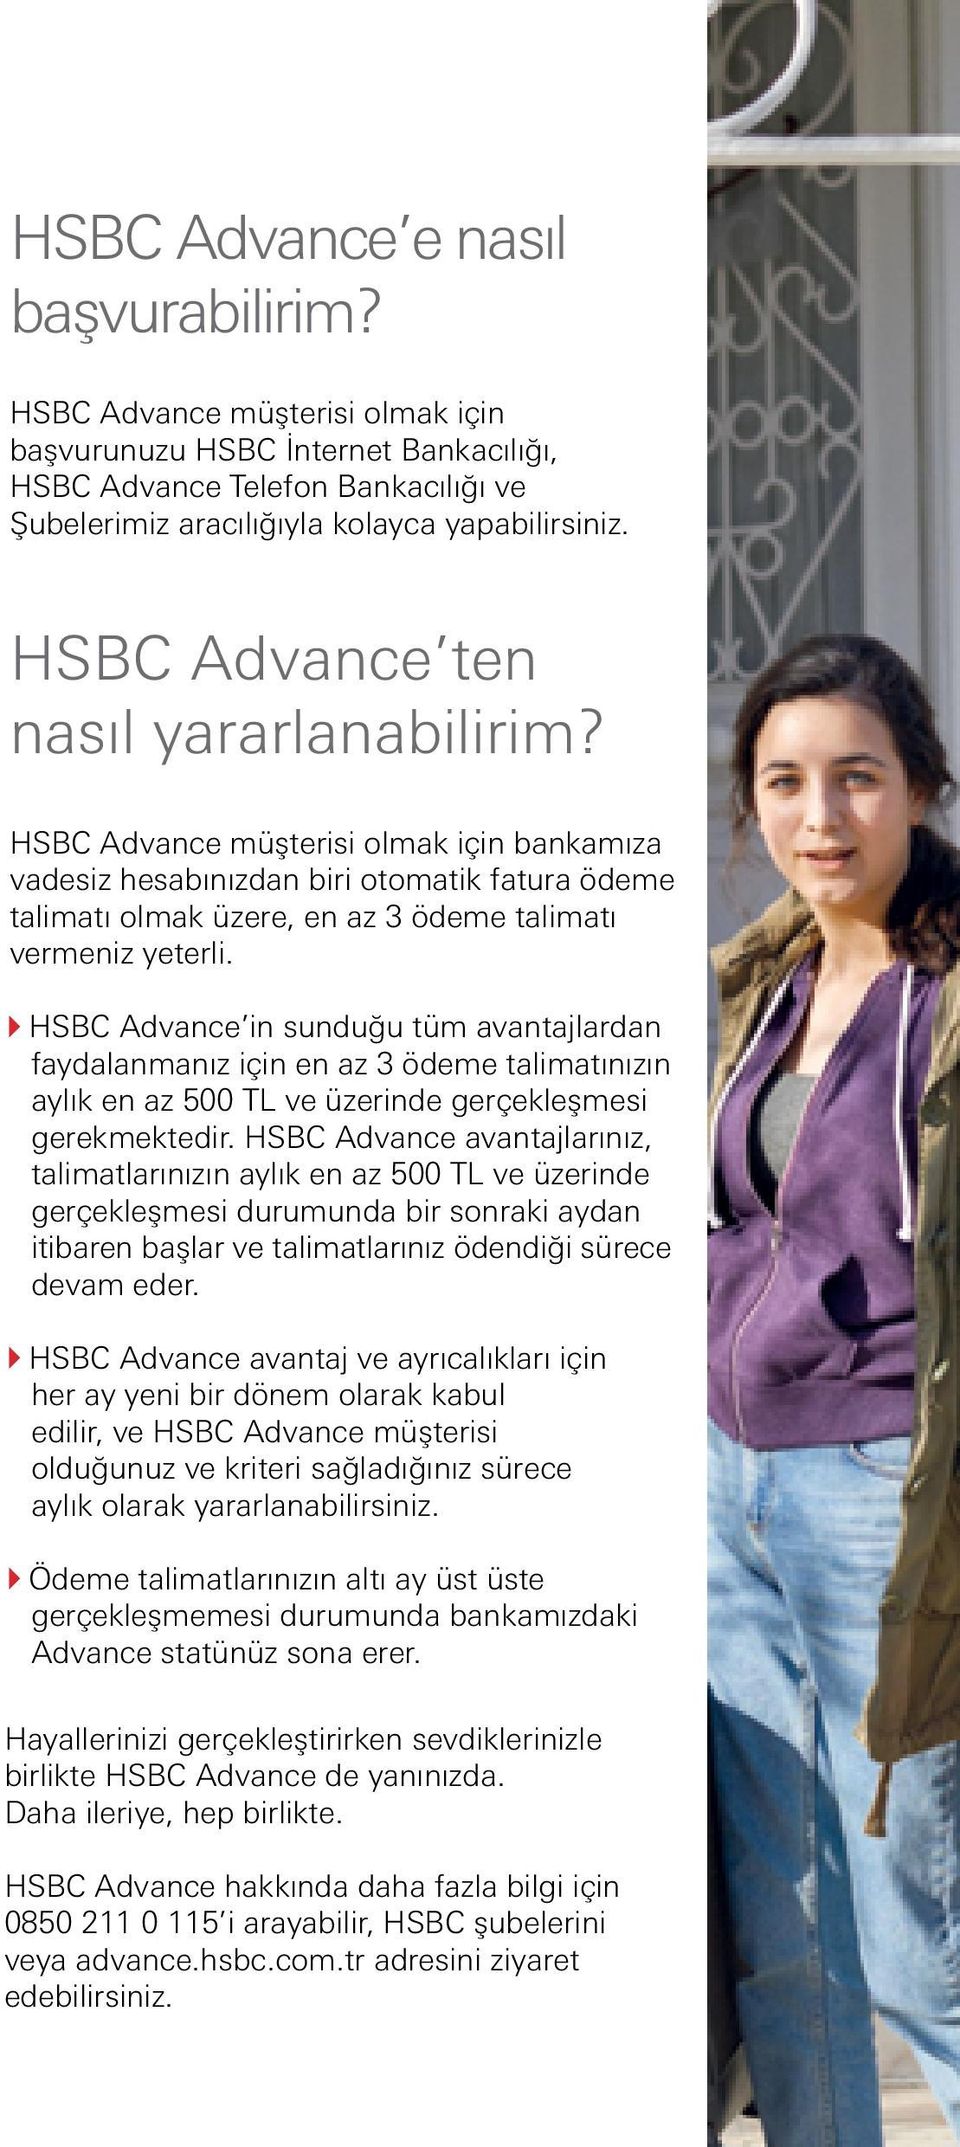 HSBC Advance in sunduğu tüm avantajlardan faydalanmanız için en az 3 ödeme talimatınızın aylık en az 500 TL ve üzerinde gerçekleşmesi gerekmektedir.